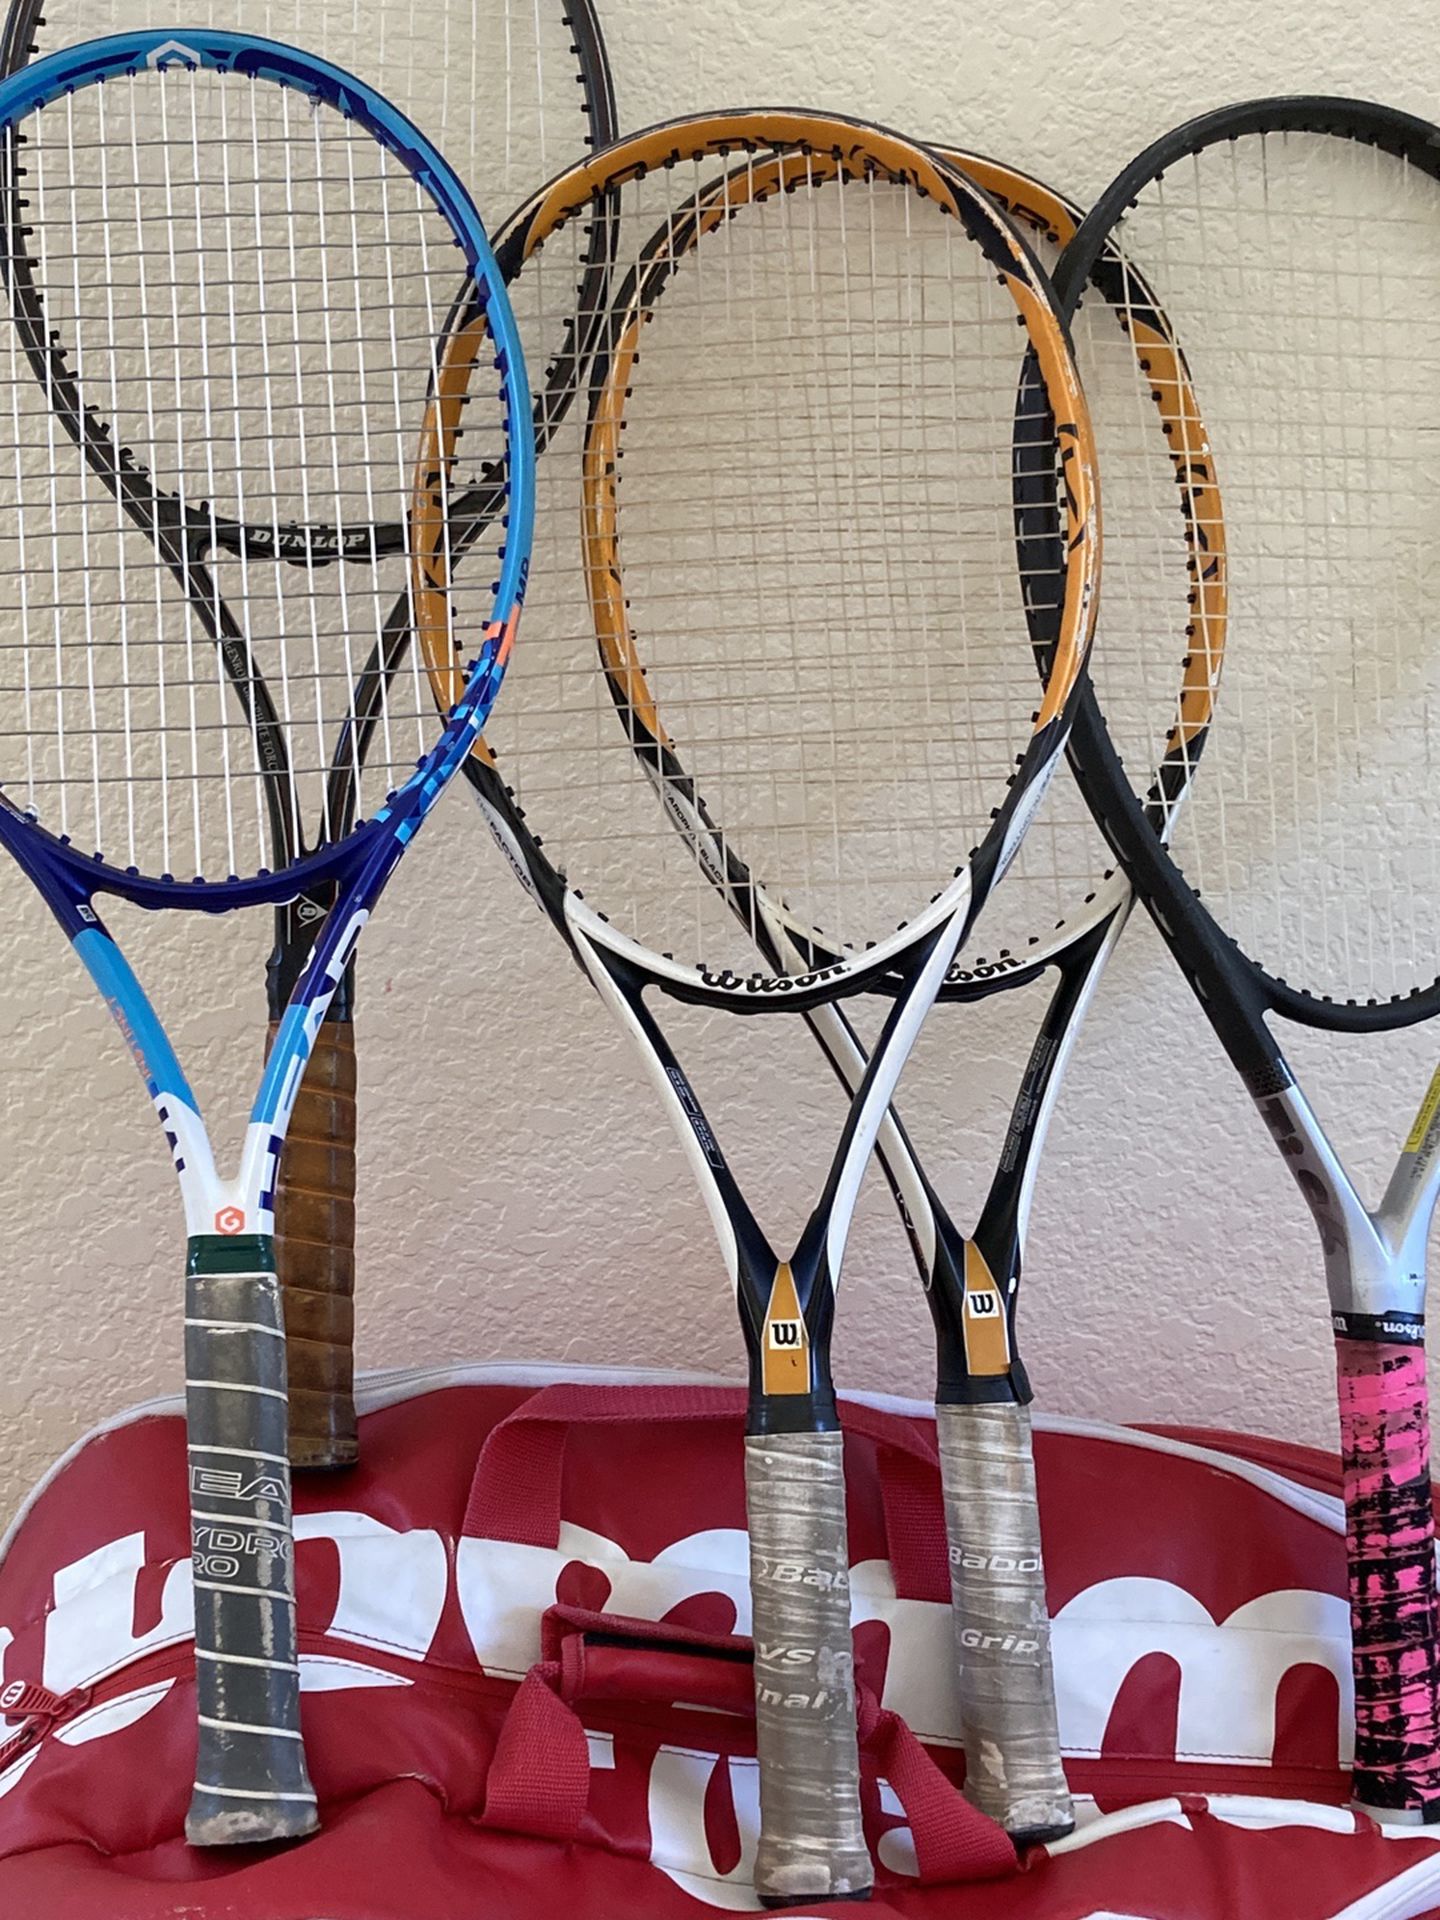 Tennis package bundle Rackets String